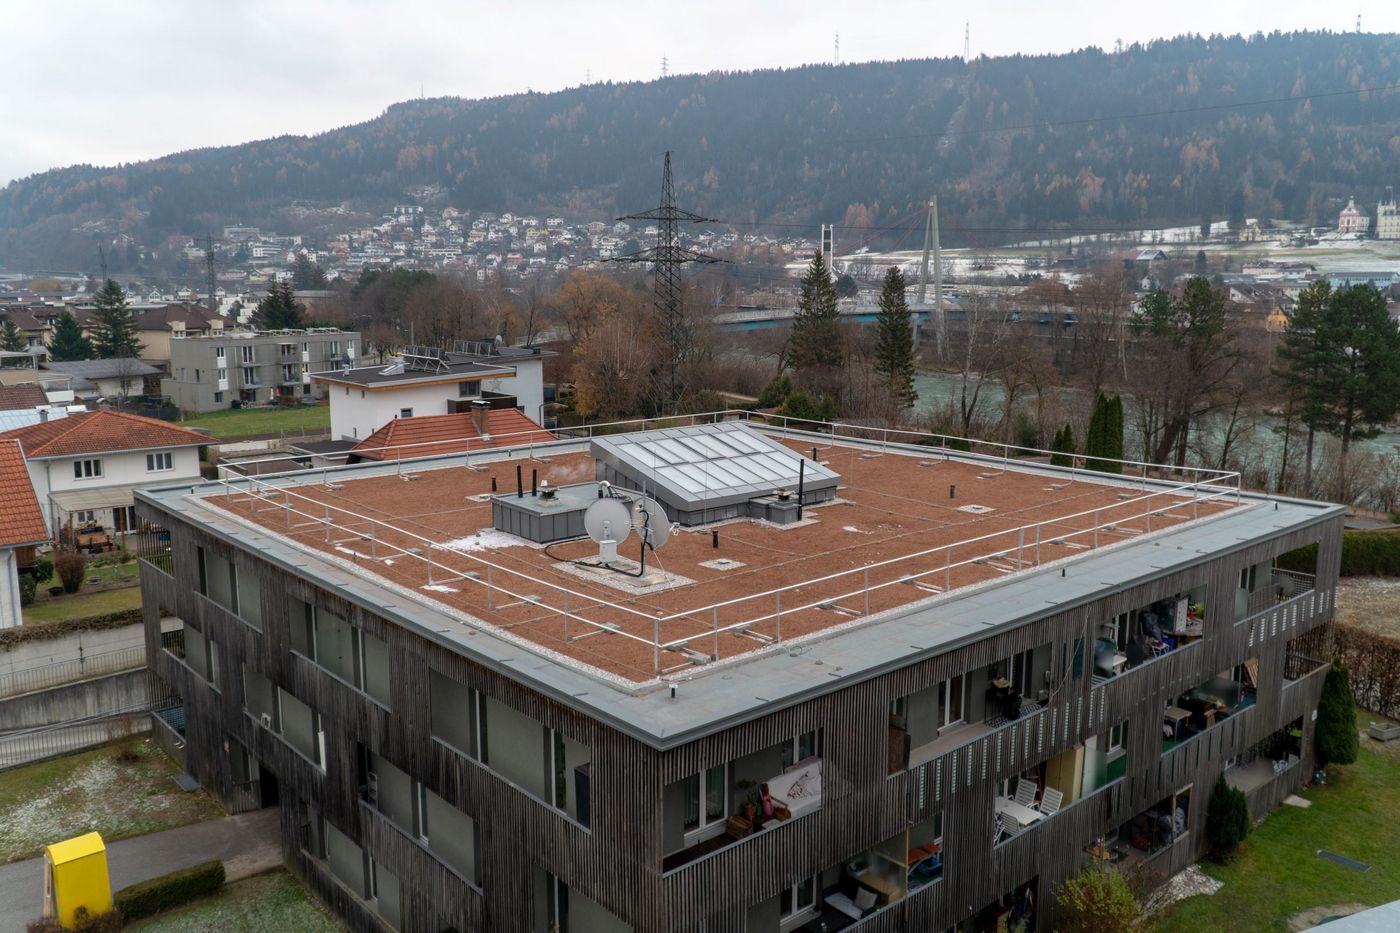 NHT, Mitterweg, Innsbruck: Übersichtsfoto der fertiggestellten Sanierung der Dachfläche